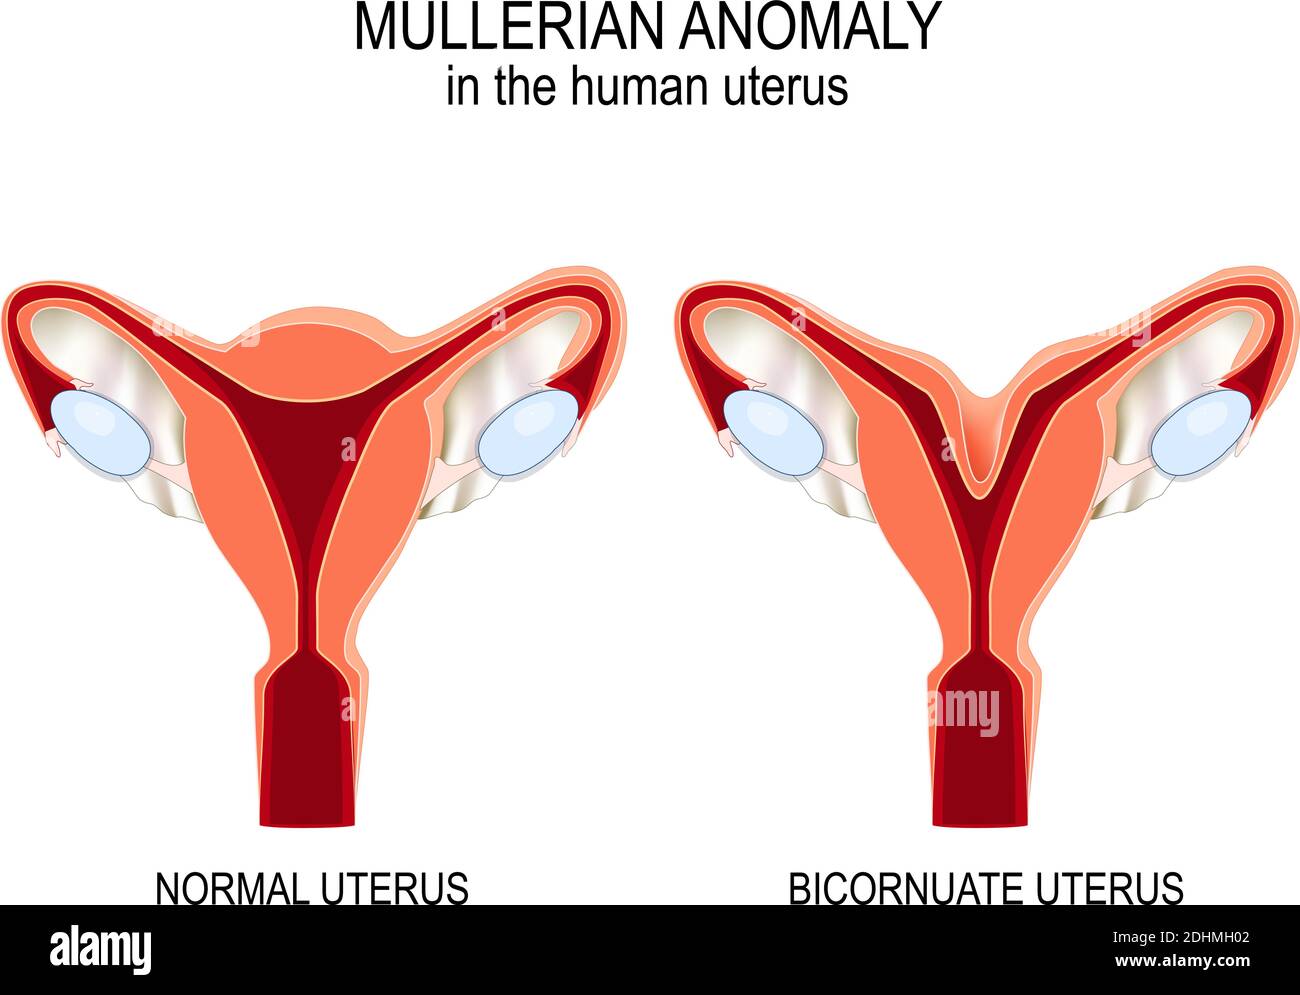 Anomalia mulleriana nell'utero umano. Utero normale e utero Bicornuato. Illustrazione vettoriale per uso medico, biologico, educativo e scientifico Illustrazione Vettoriale